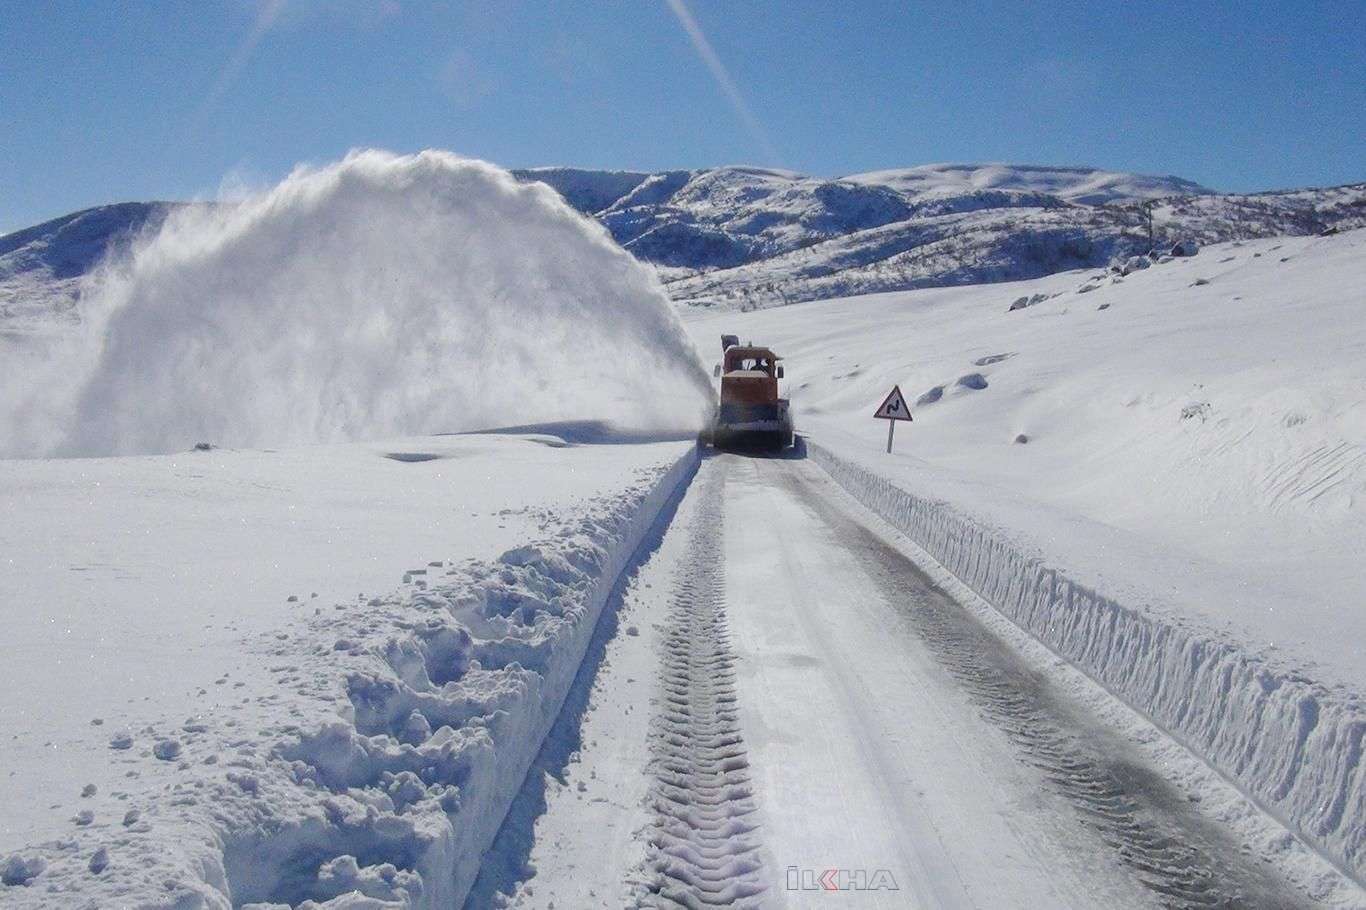 Yoğun kar yağışı ve tipi nedeniyle Bingöl'ün çevre illeriyle ulaşımı sağlanamıyor